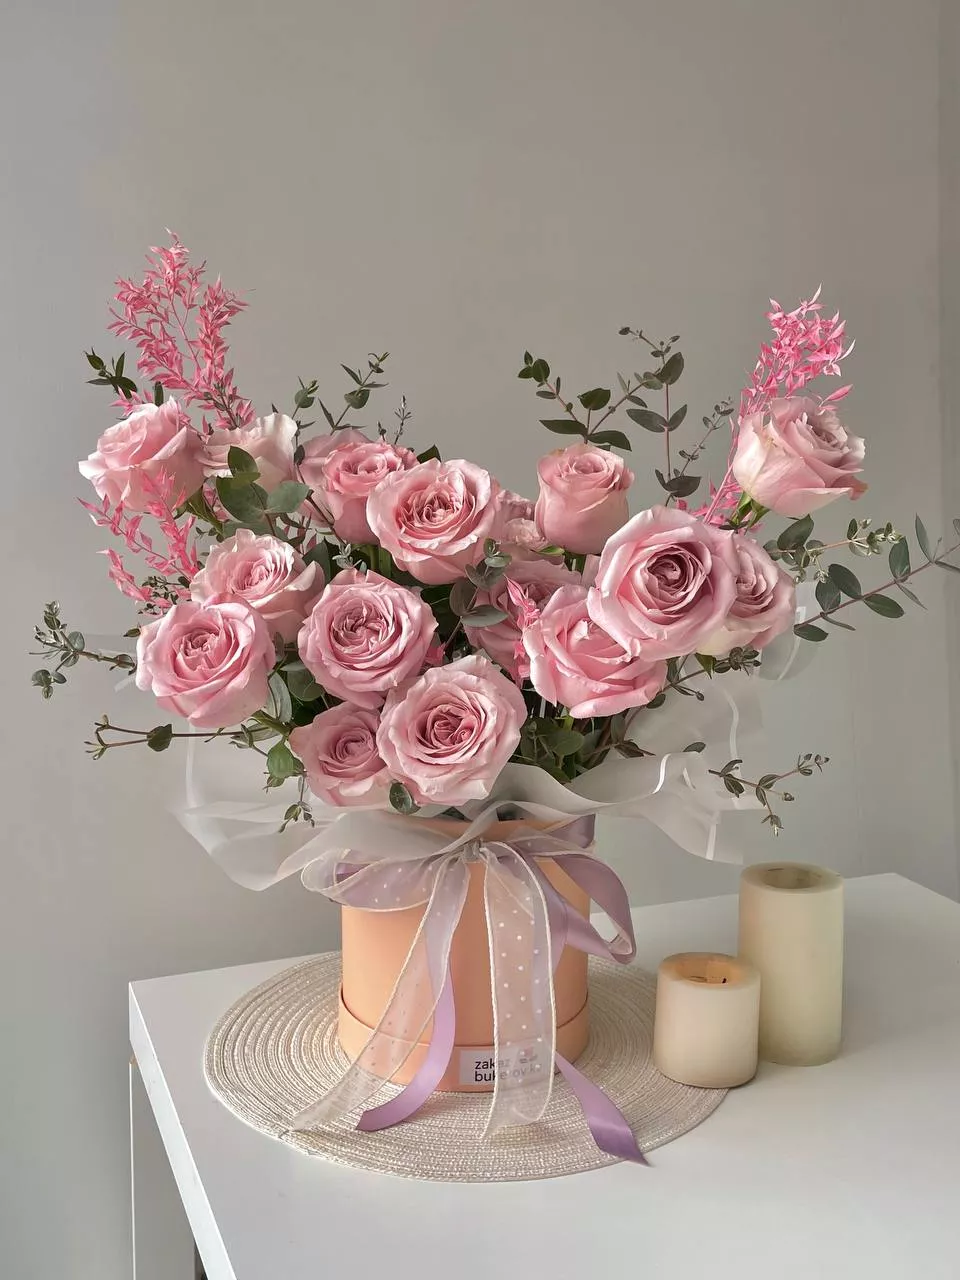 Композиция "Art Roses" с розами и рускусом в коробке